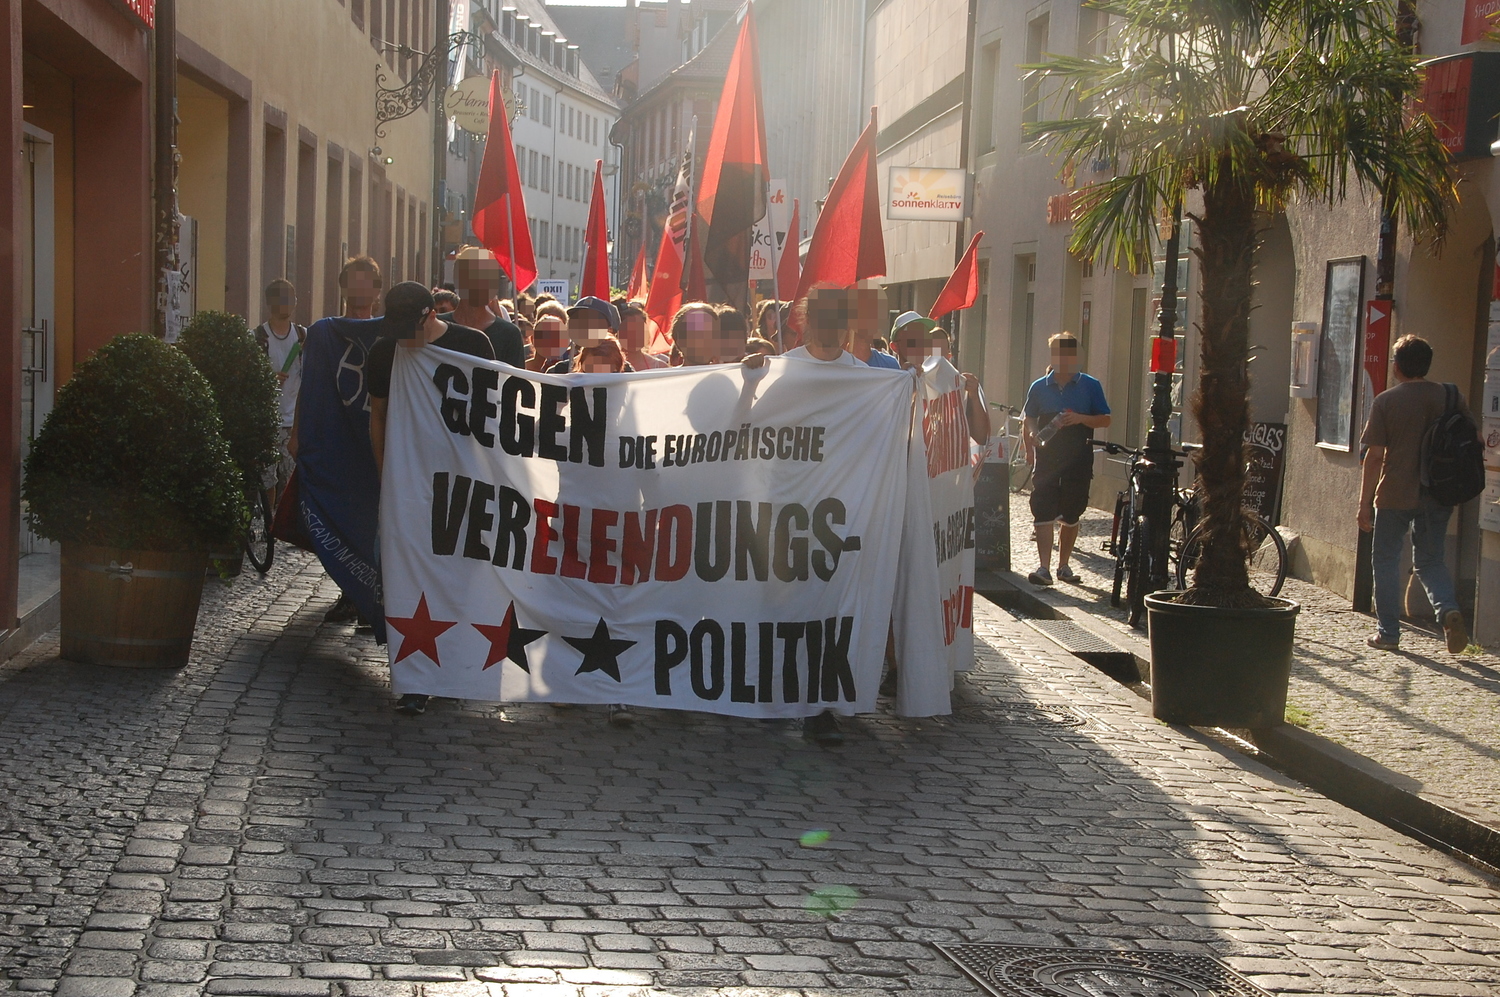 Bericht zur Demo: Solidarität mit den Menschen in Griechenland – Gegen die deutsch-europäische Verelendungspolitik!